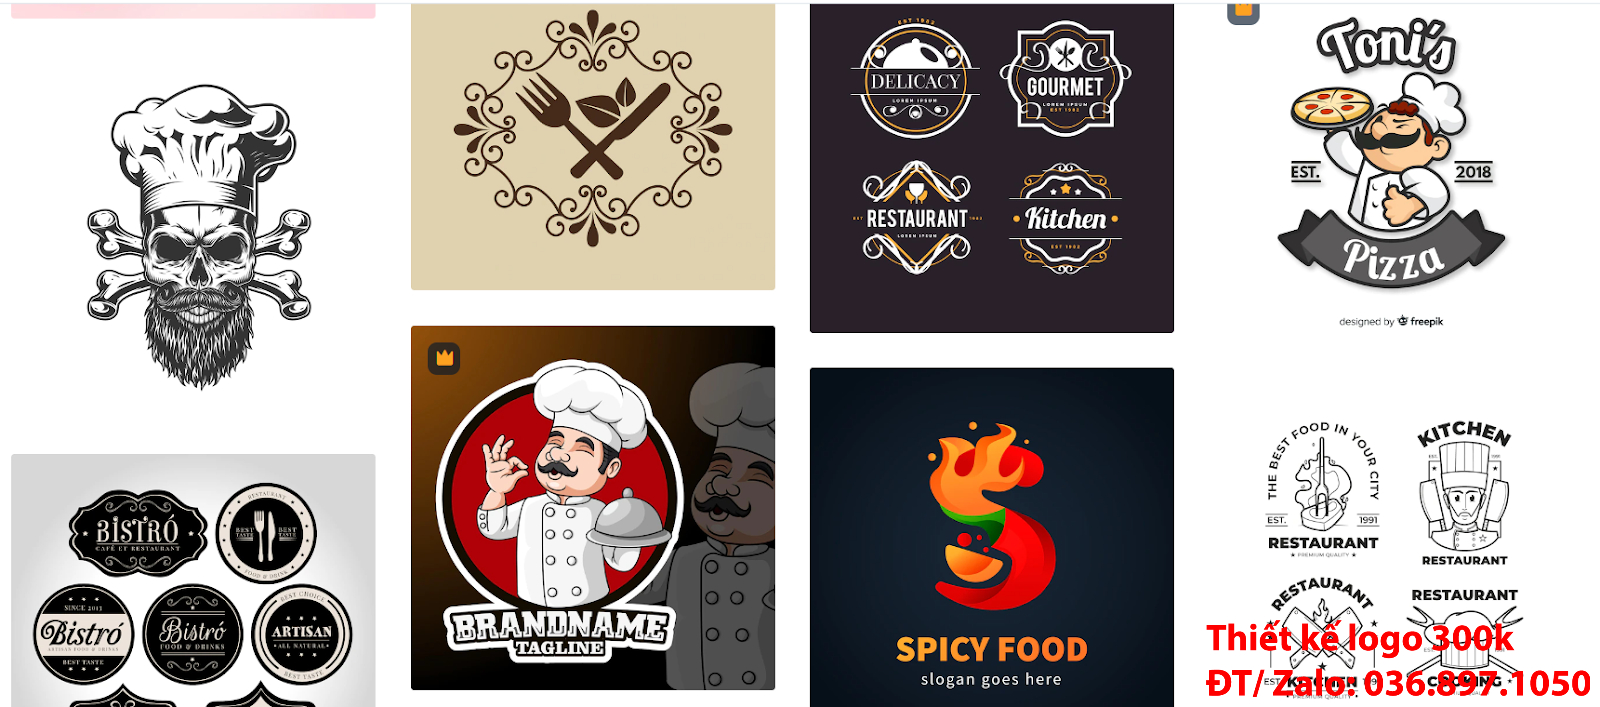 Mẫu Hình ảnh Logo đầu bếp chef cook PNG và Vector đẹp giá rẻ chất lượng cao 500k